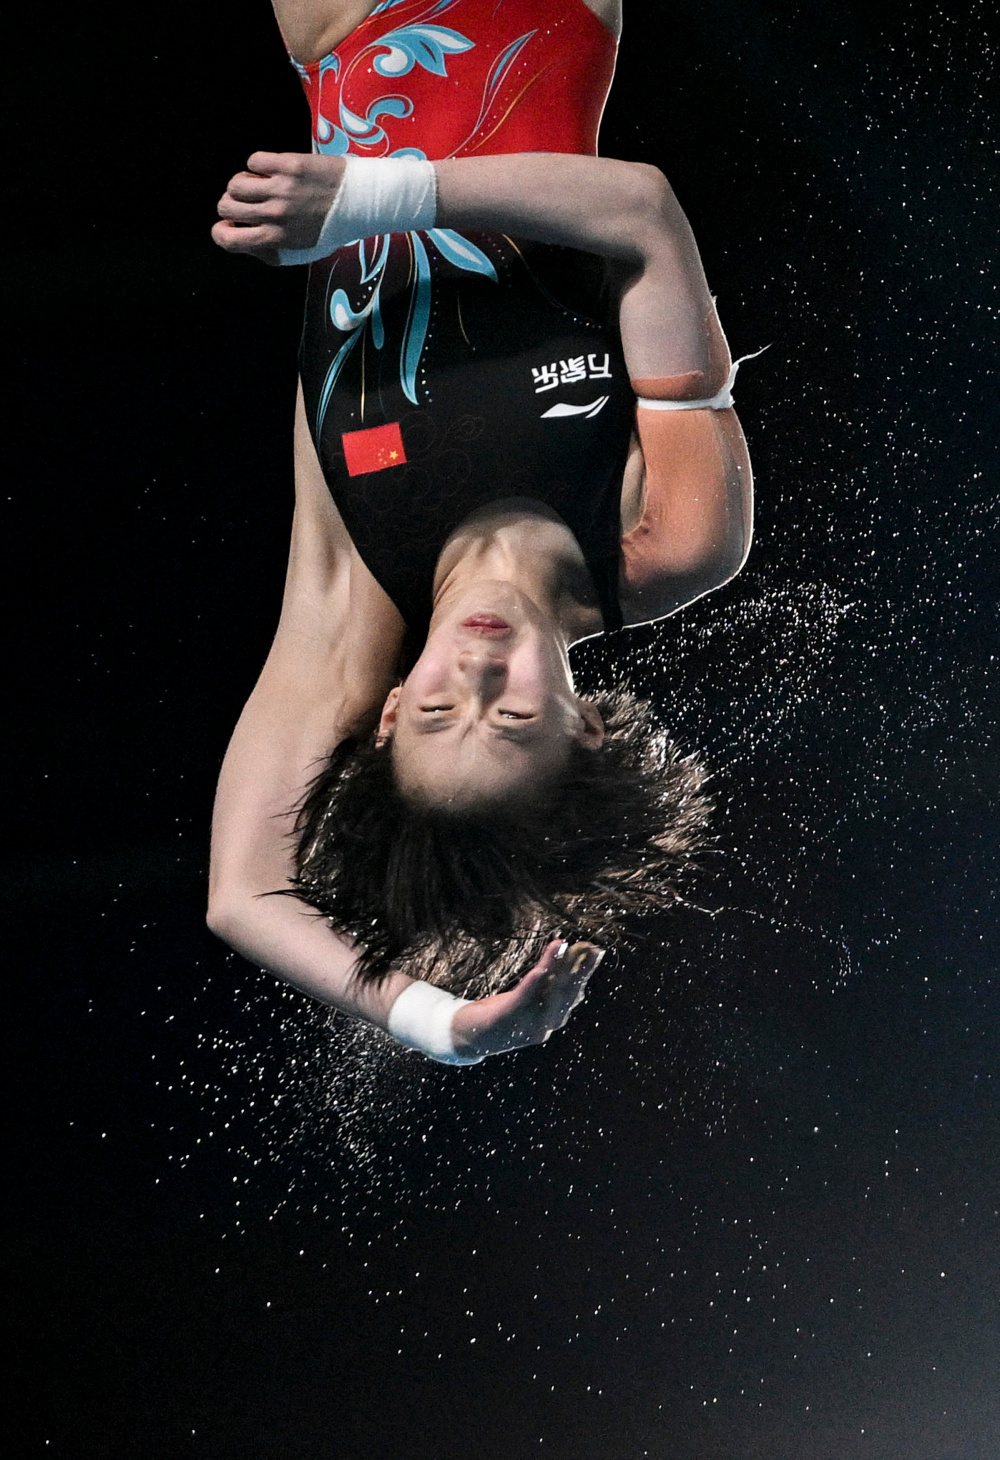 女子跳水10米图片